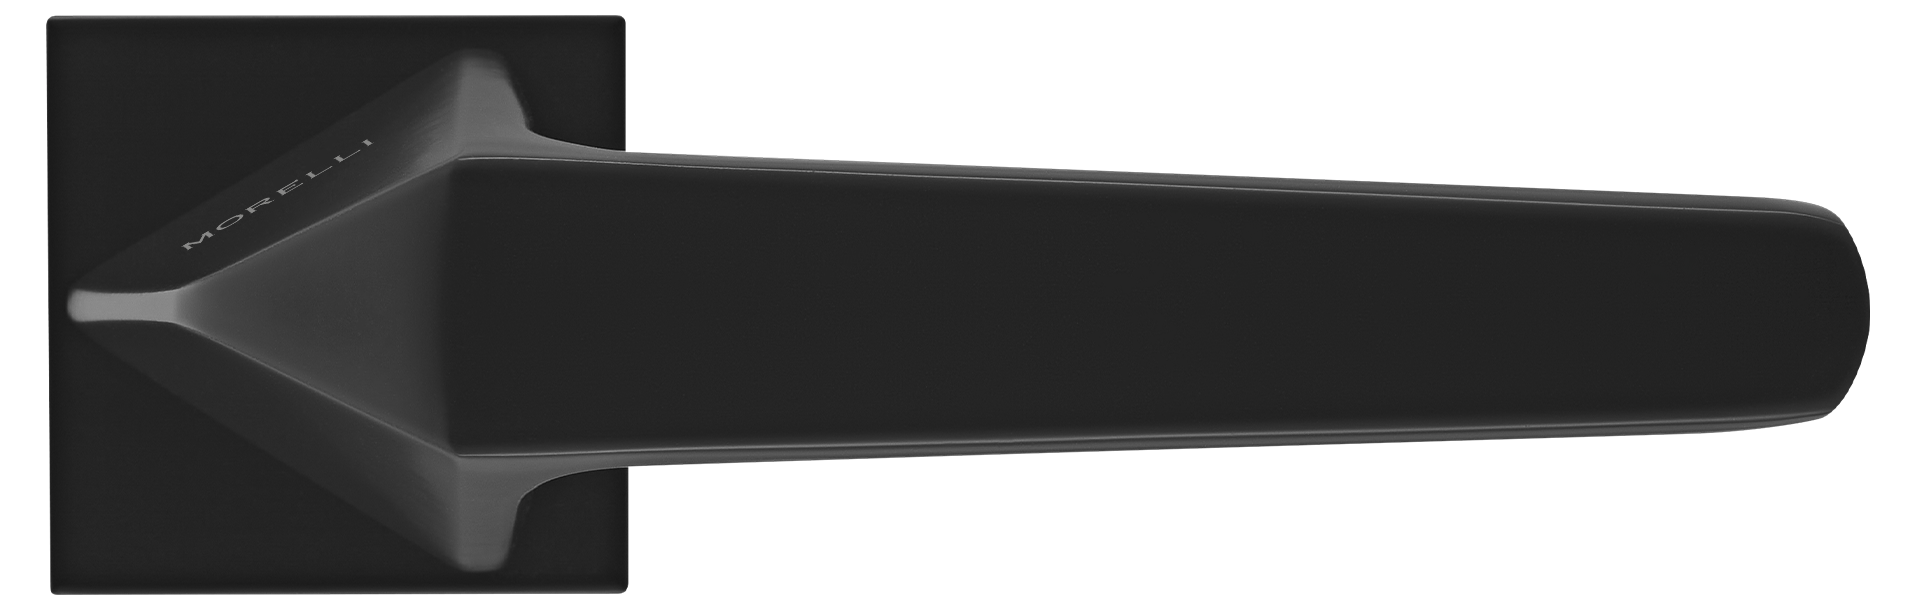 SOUK ручка дверная на квадратной розетке 6 мм, MH-55-S6 BL, цвет - черный фото купить в Чебоксарах